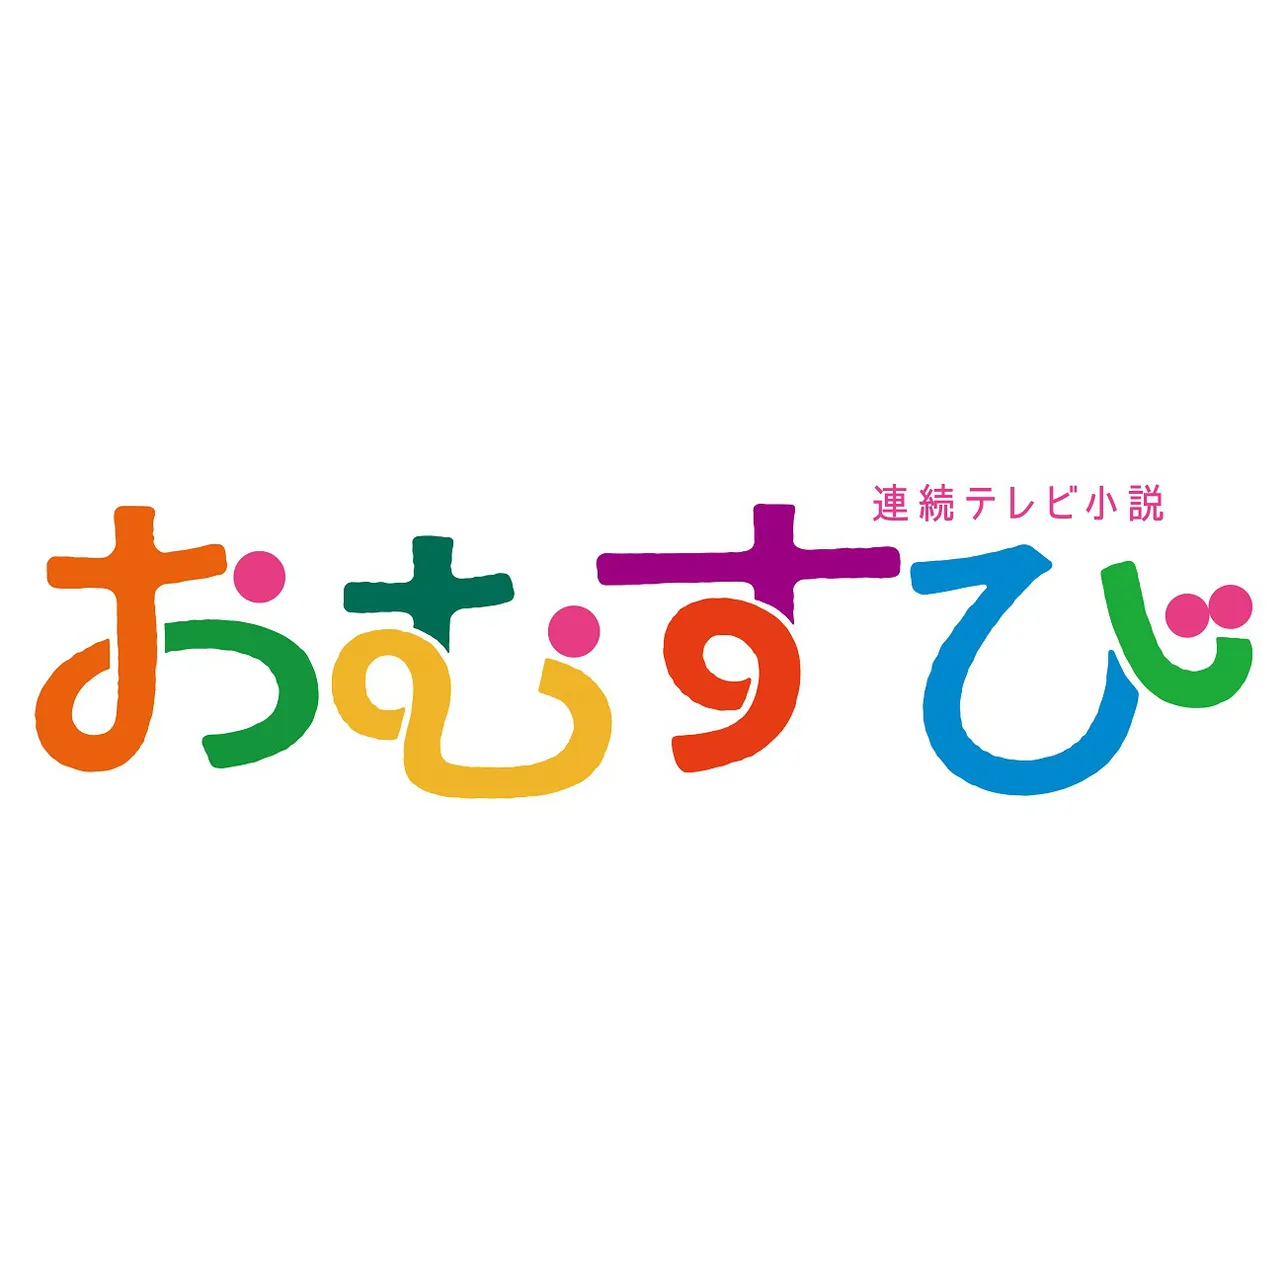 連続テレビ小説「おむすび」番組ロゴ(横)